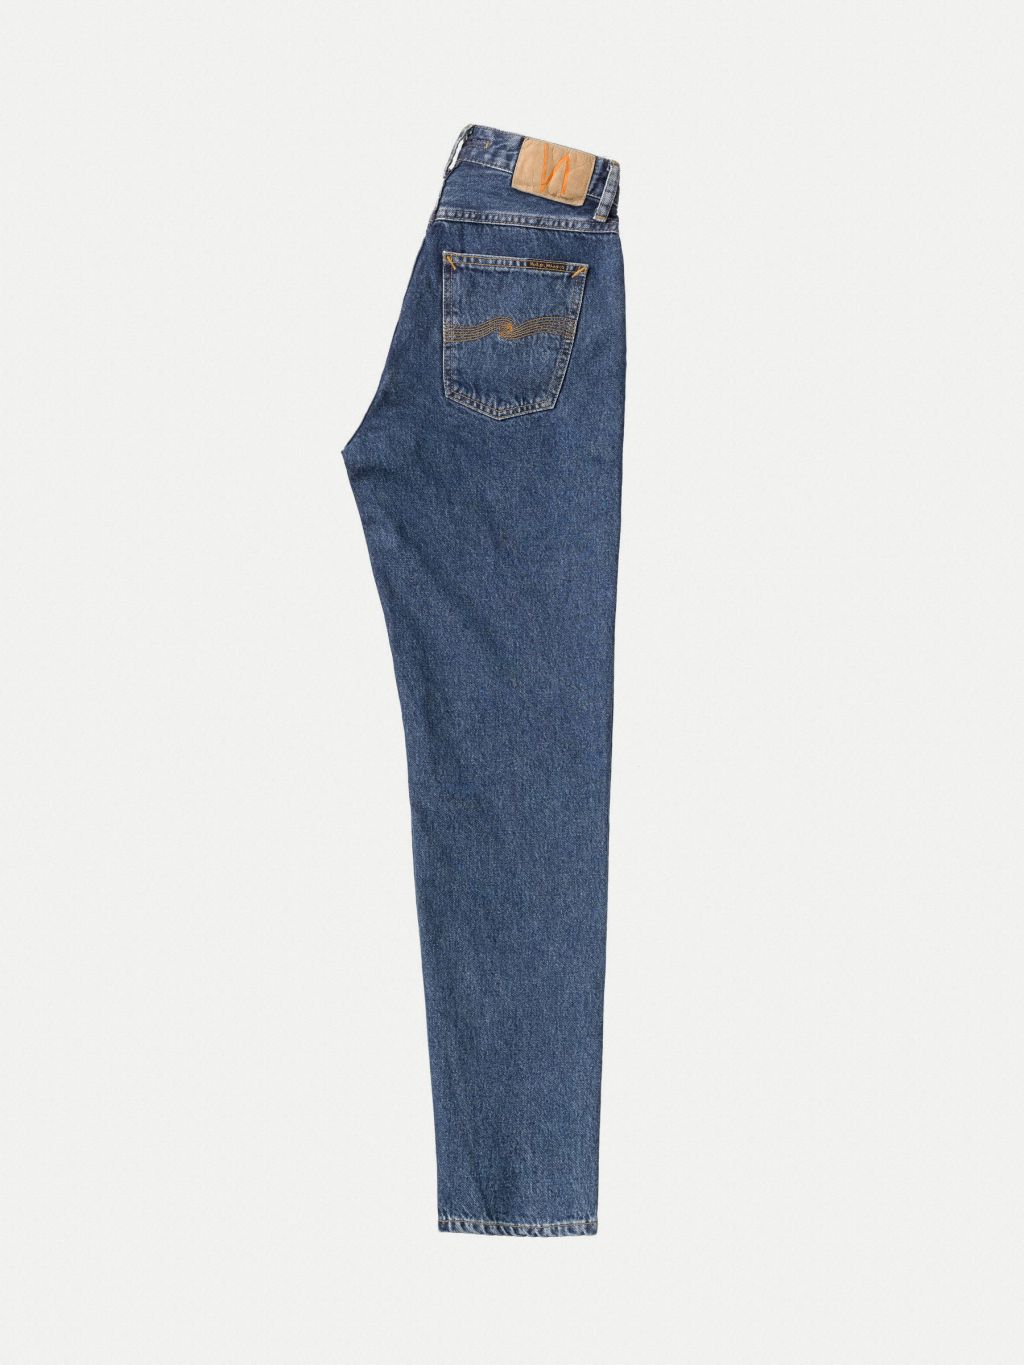 Breezy Britt High Waist Jeans - 90s Stone 30/34